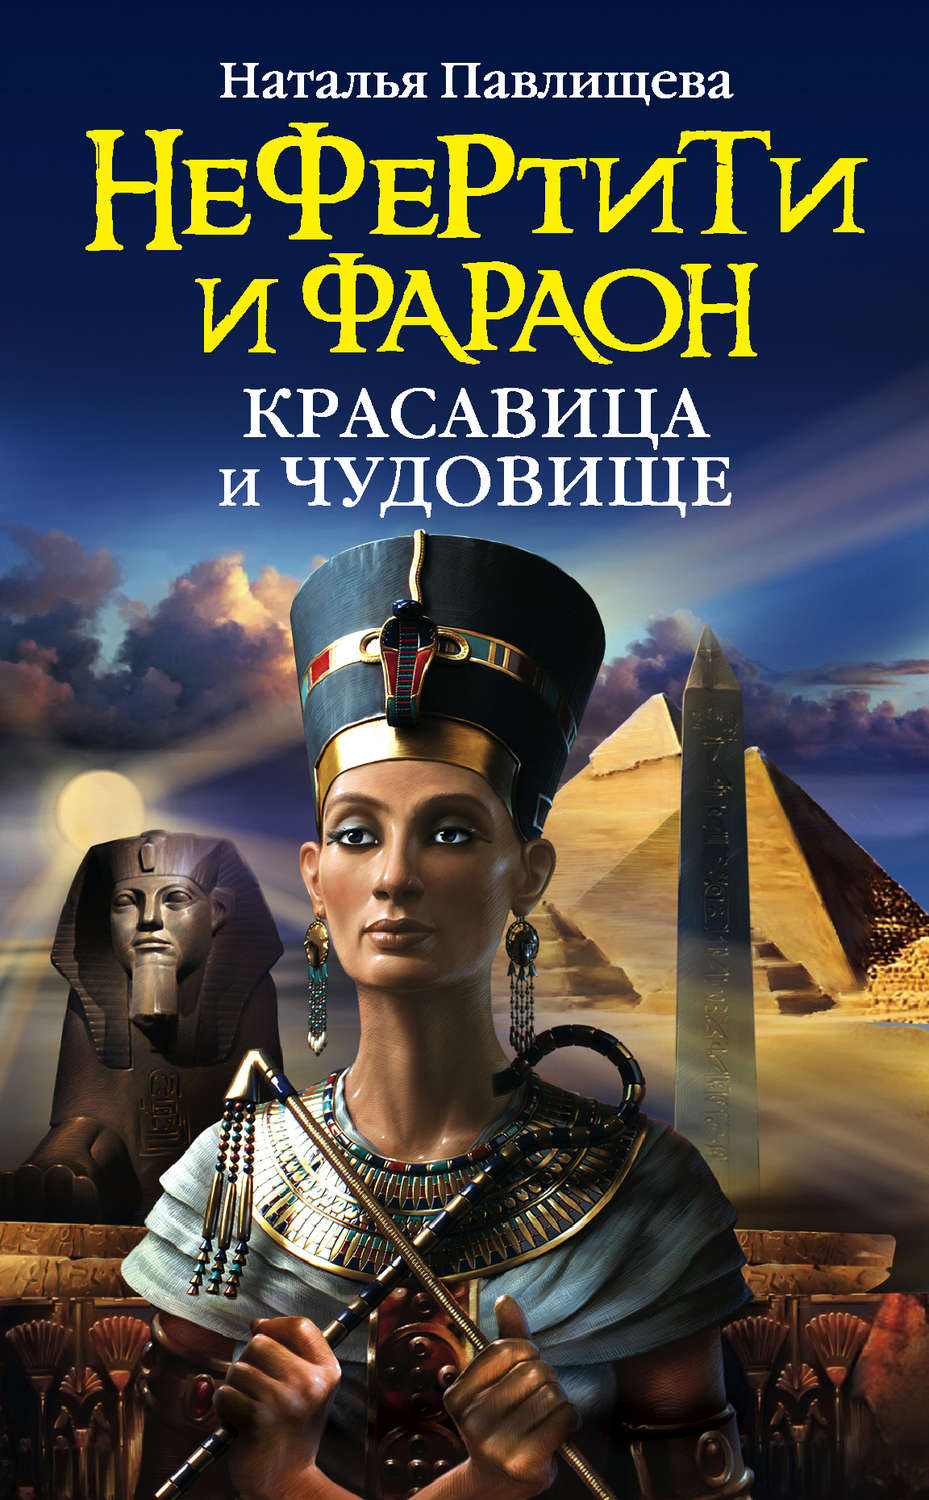 Скачать бесплатно книгу знак фараона